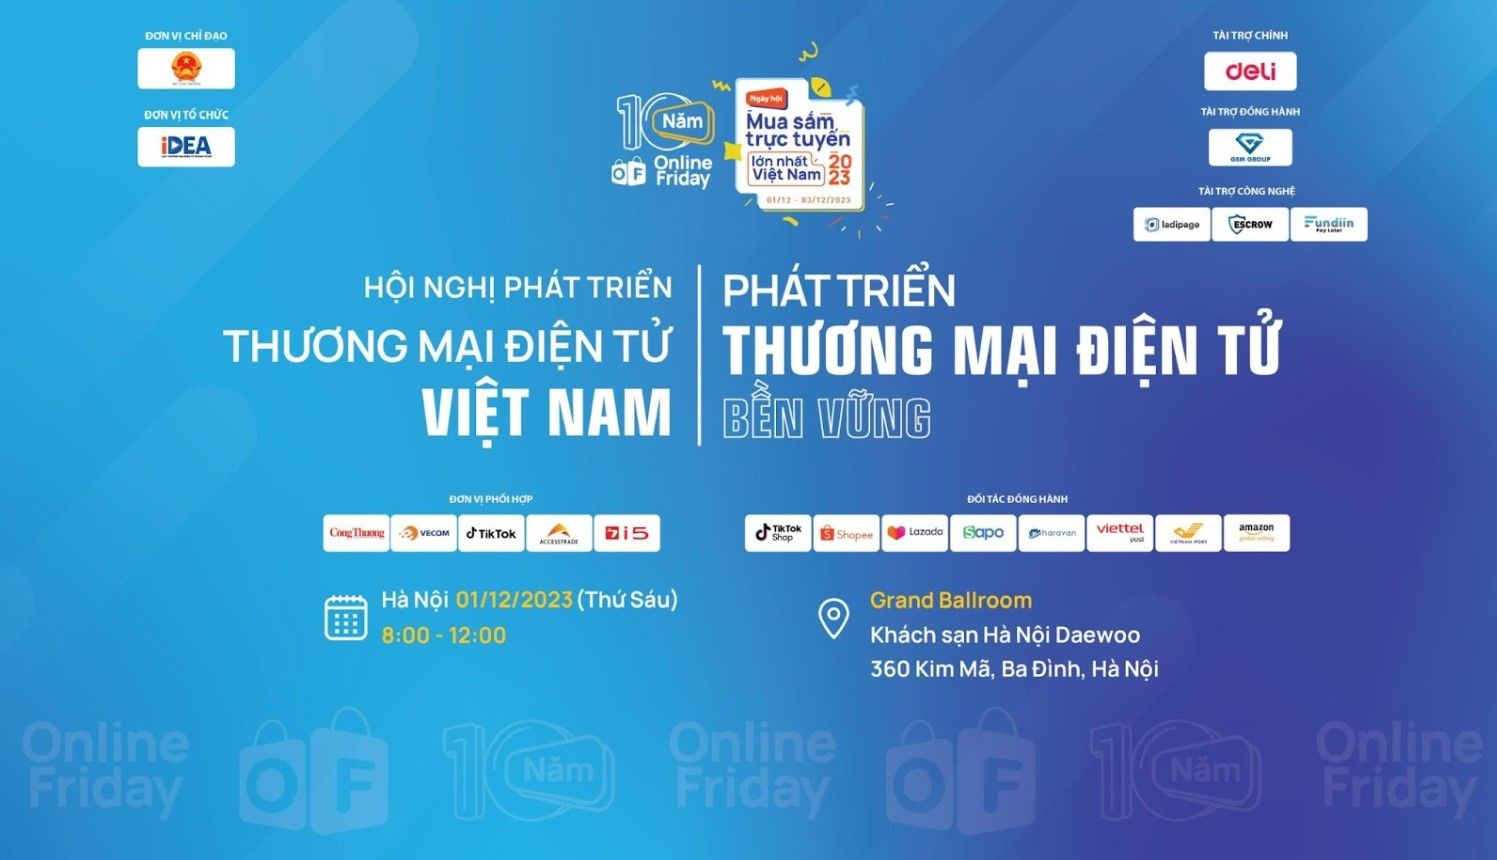 Hội nghị Phát triển thương mại điện tử Việt Nam sắp diễn ra tại Hà Nội